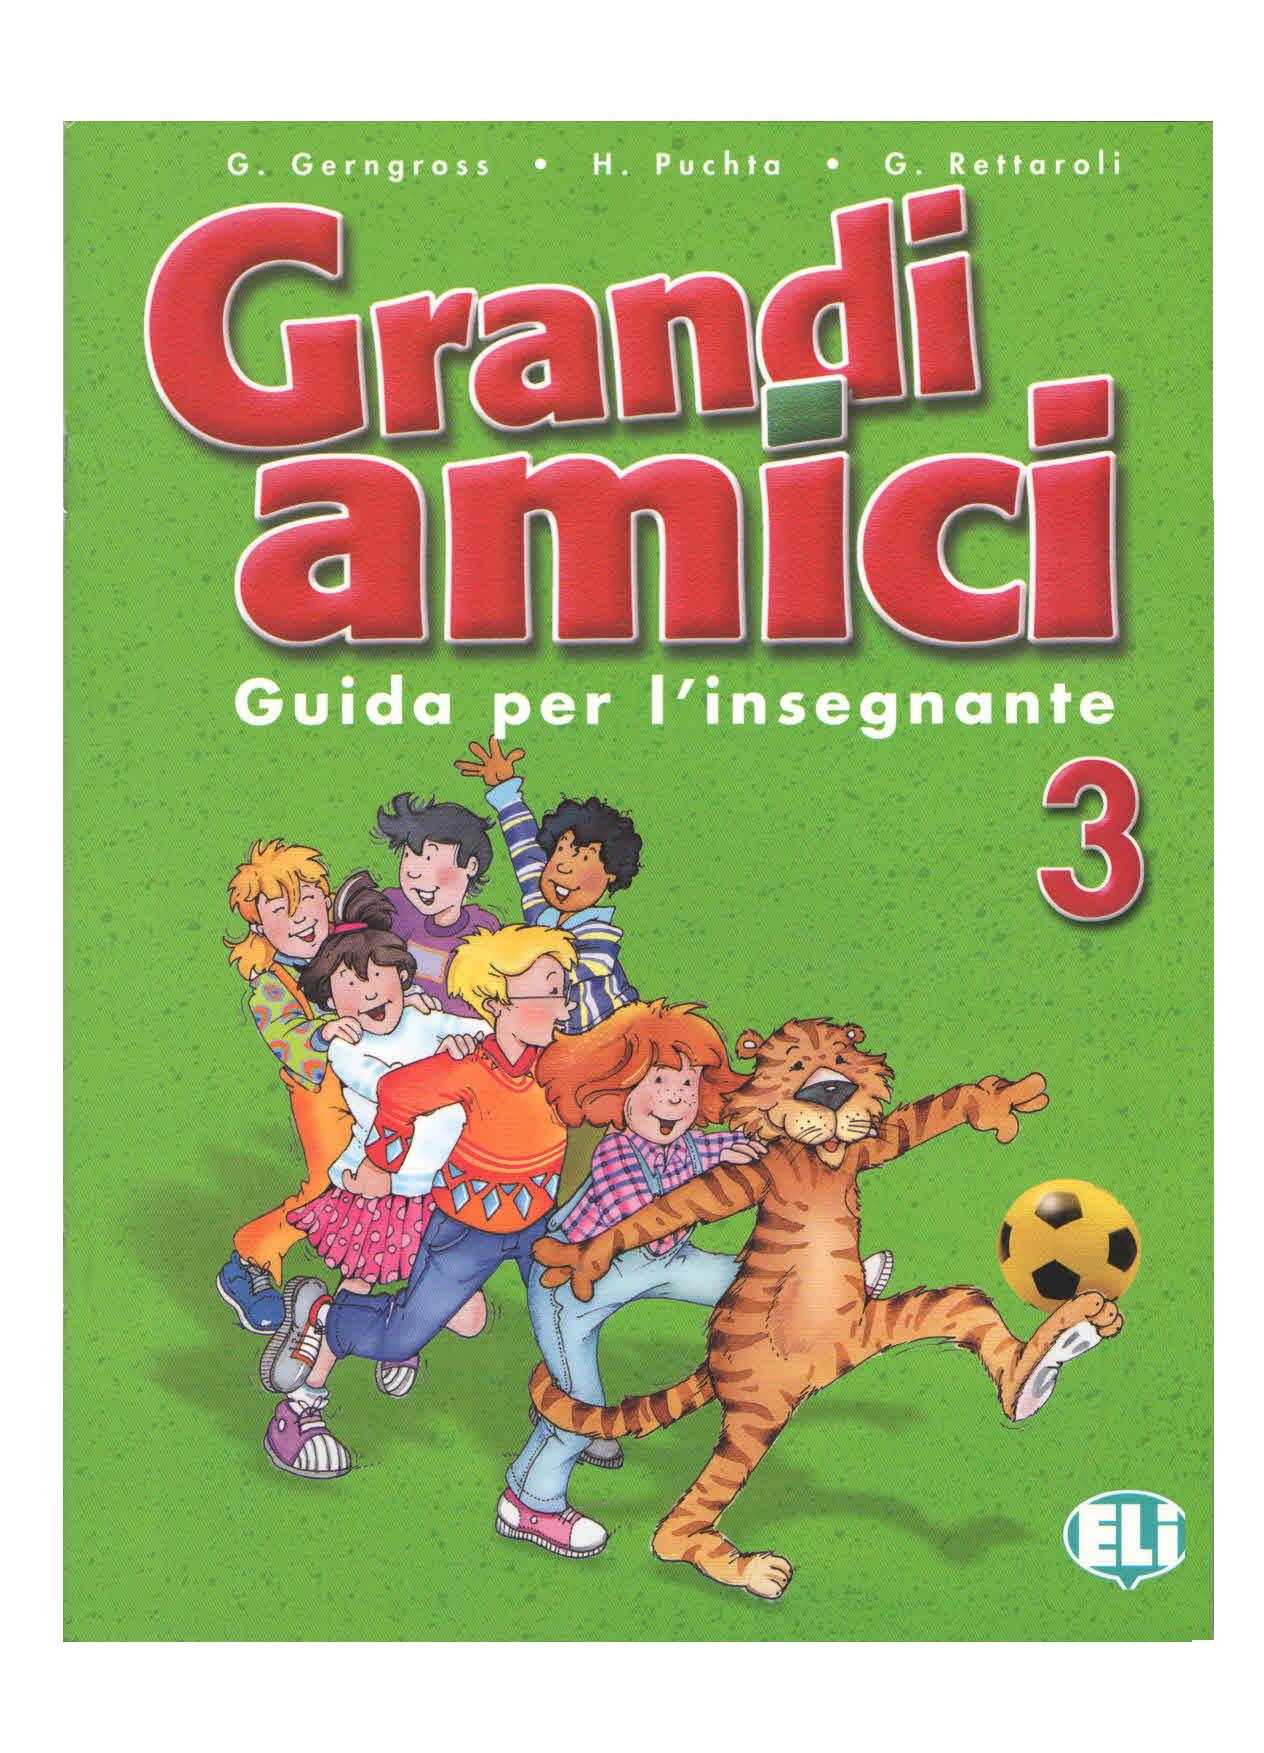 Grandi amici 3 - učitelská příručka